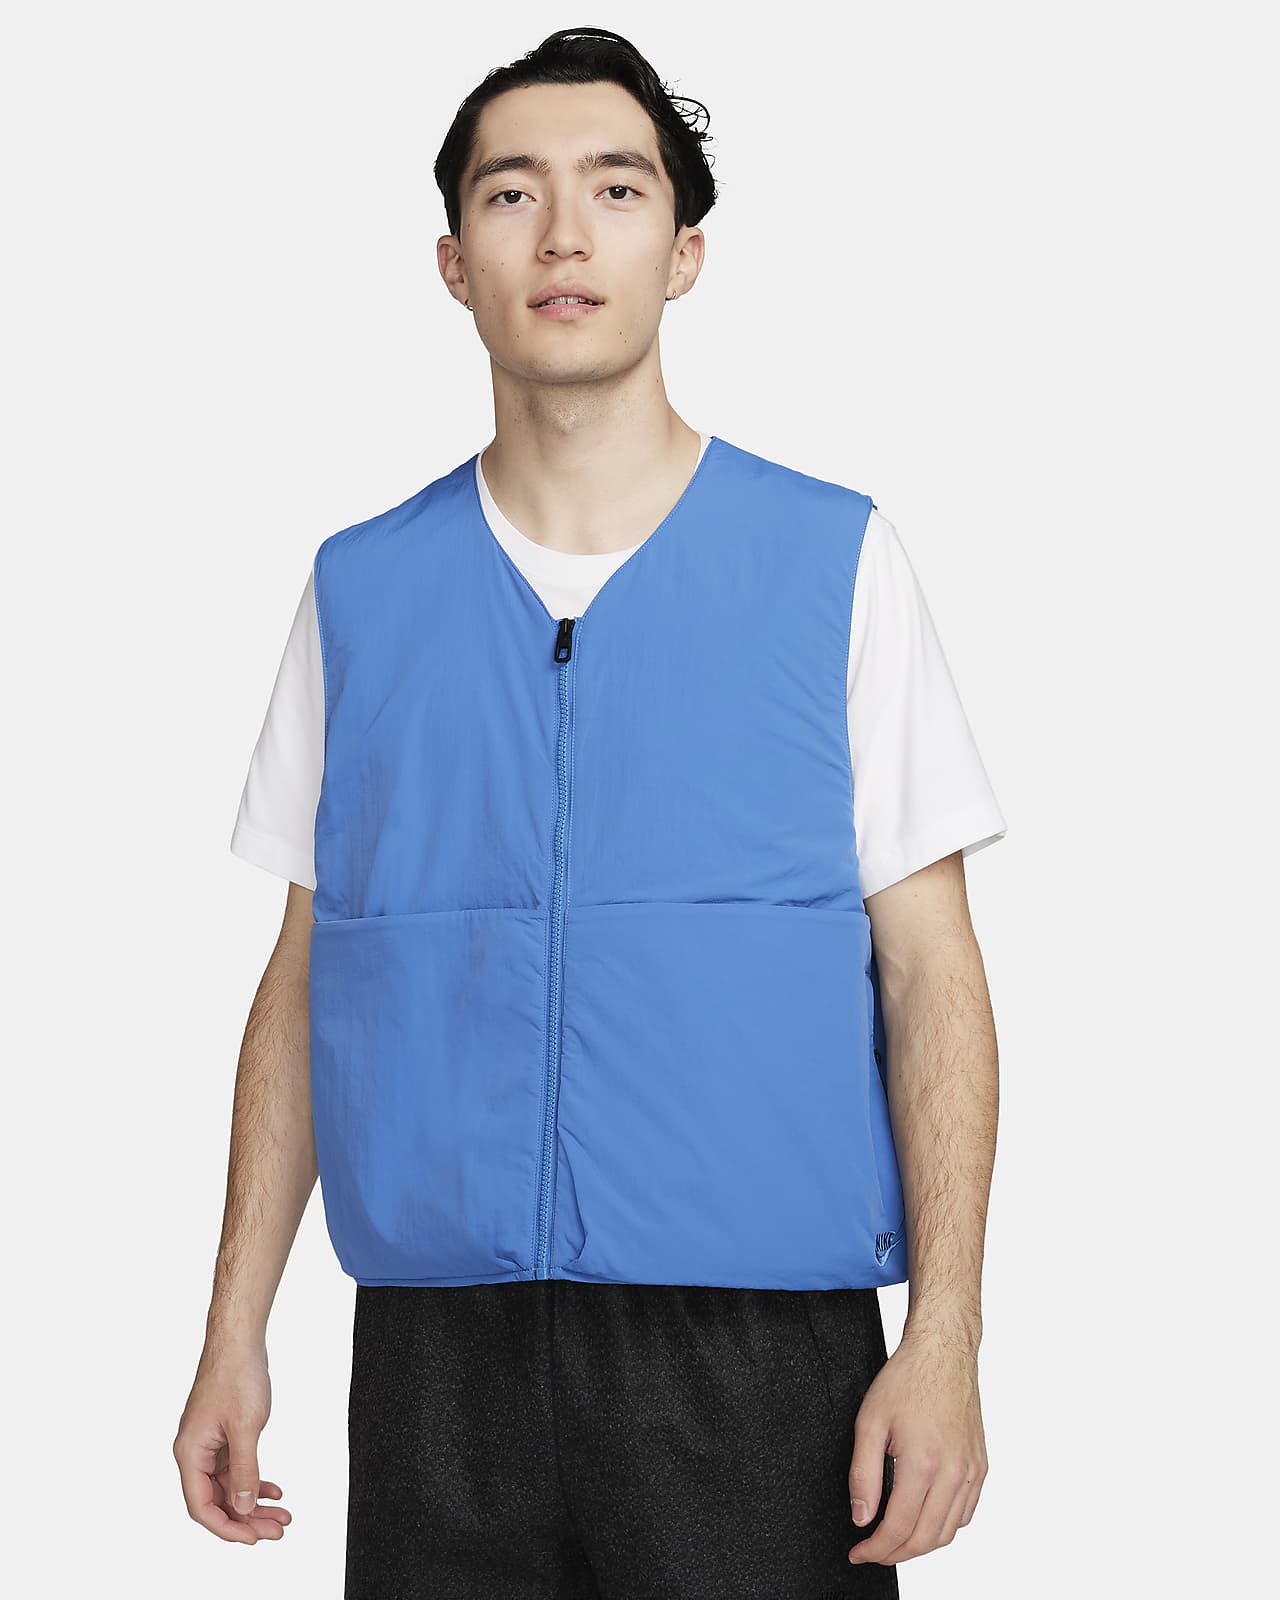 Nike Sportswear Tech Pack Men's Unlined Vest, Twine/Black, SMALL